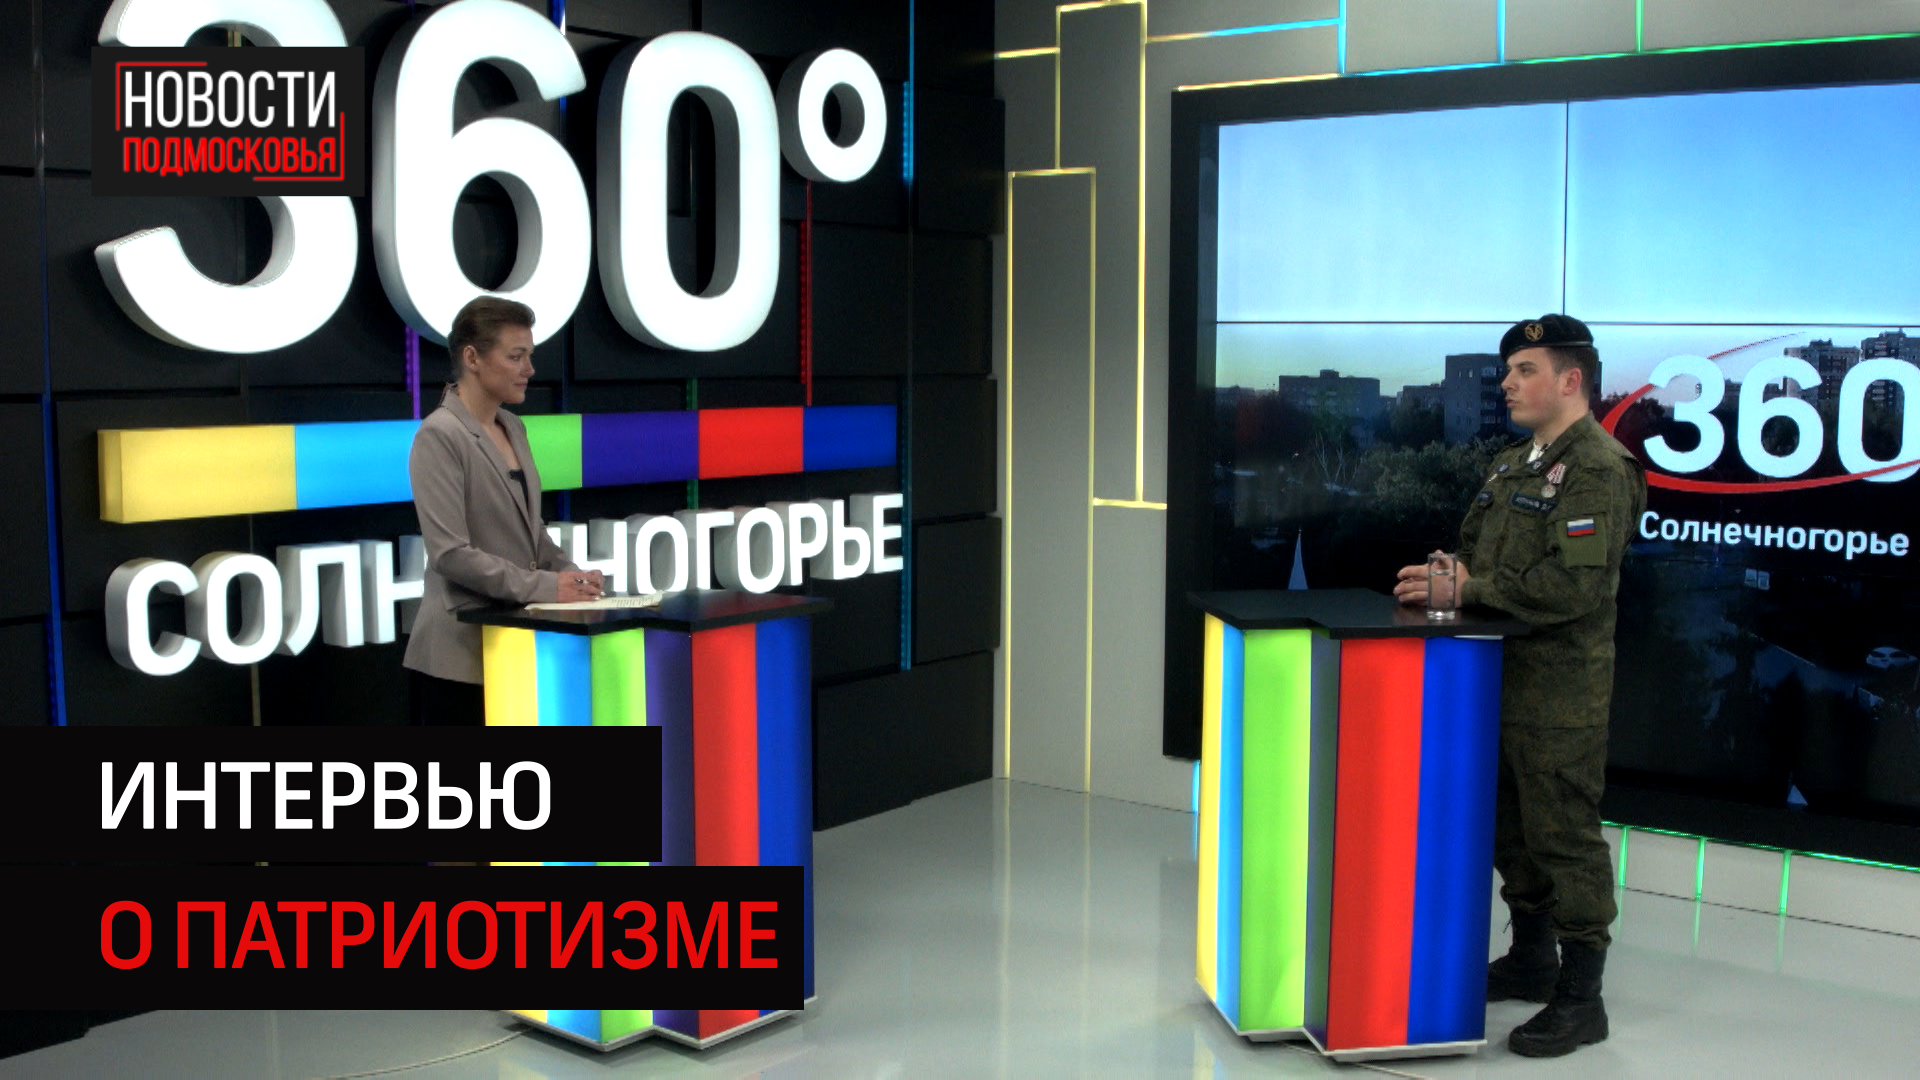 Интервью с Дмитрием Колтуновым о подростковом патриотизме